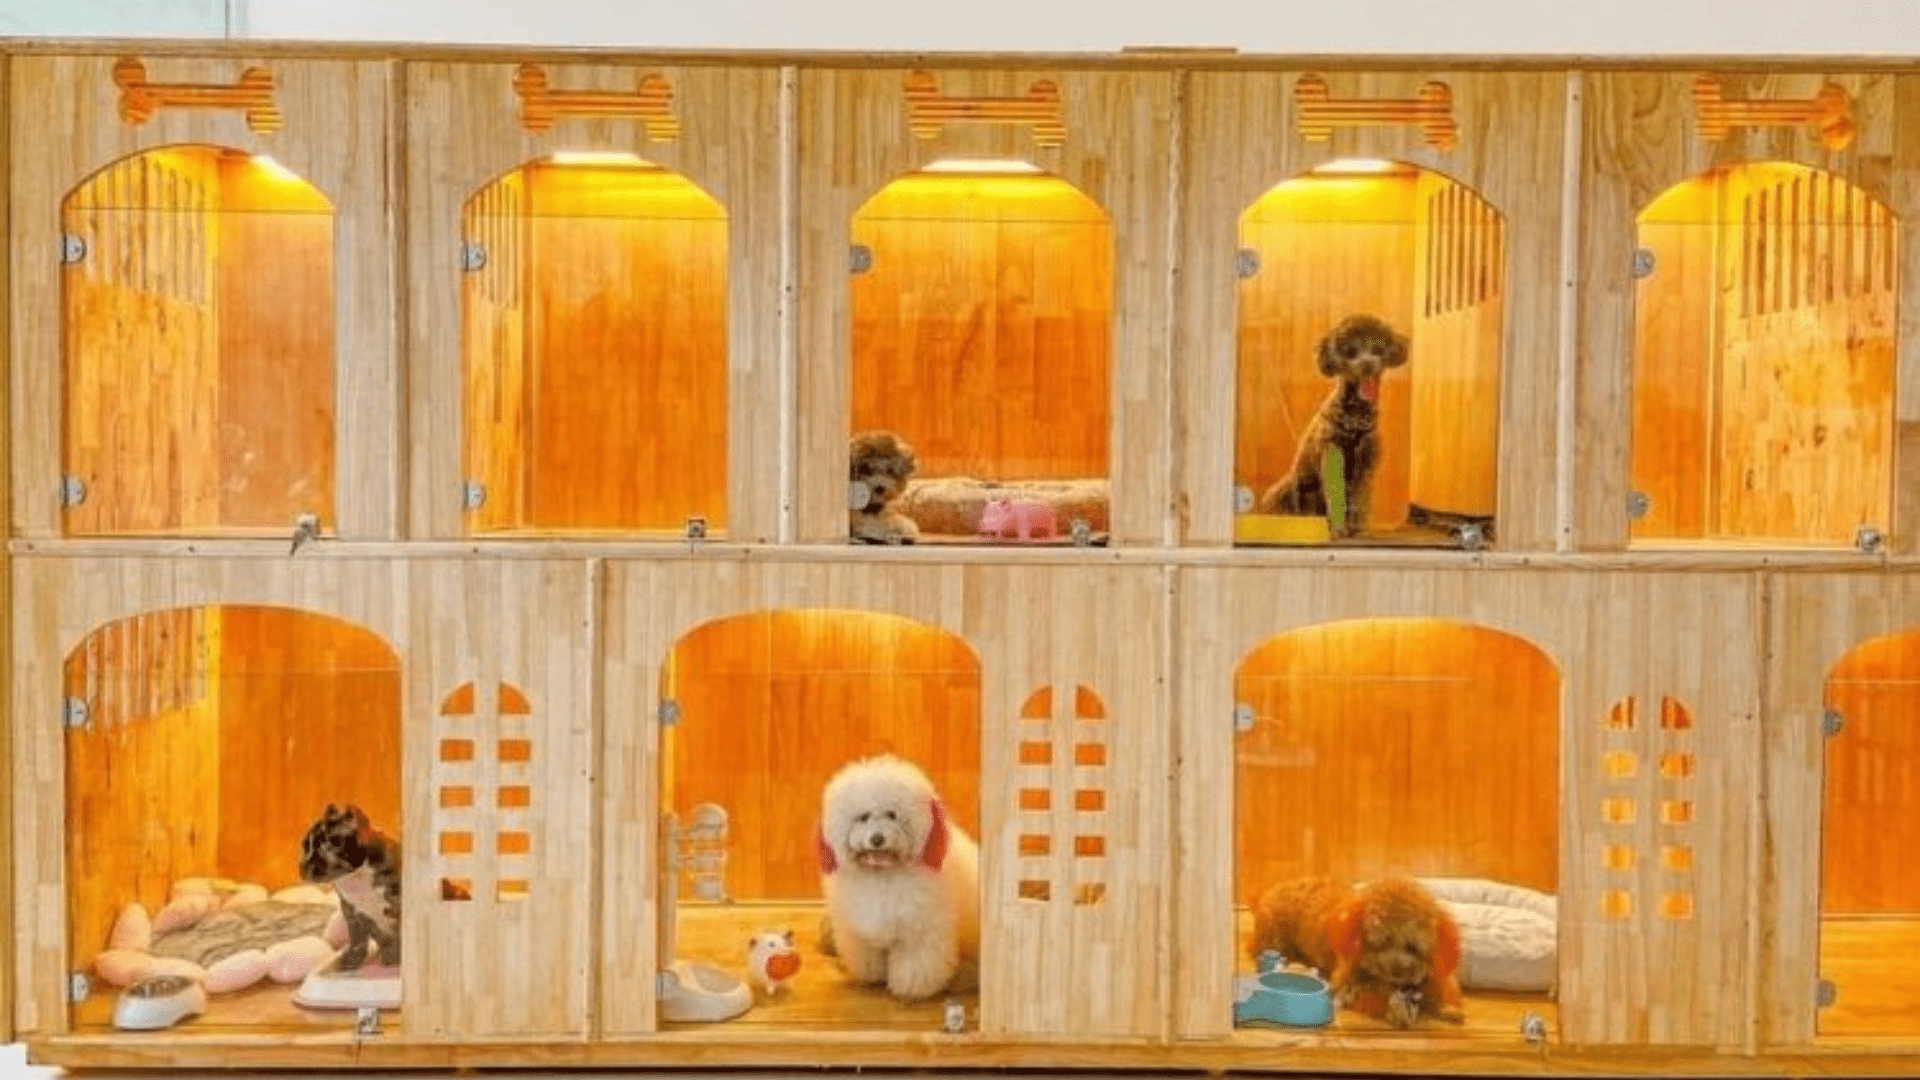 Chó Mèo Uy Tín Đà Nẵng - Cửa hàng thú cưng Đà Nẵng chất lượng